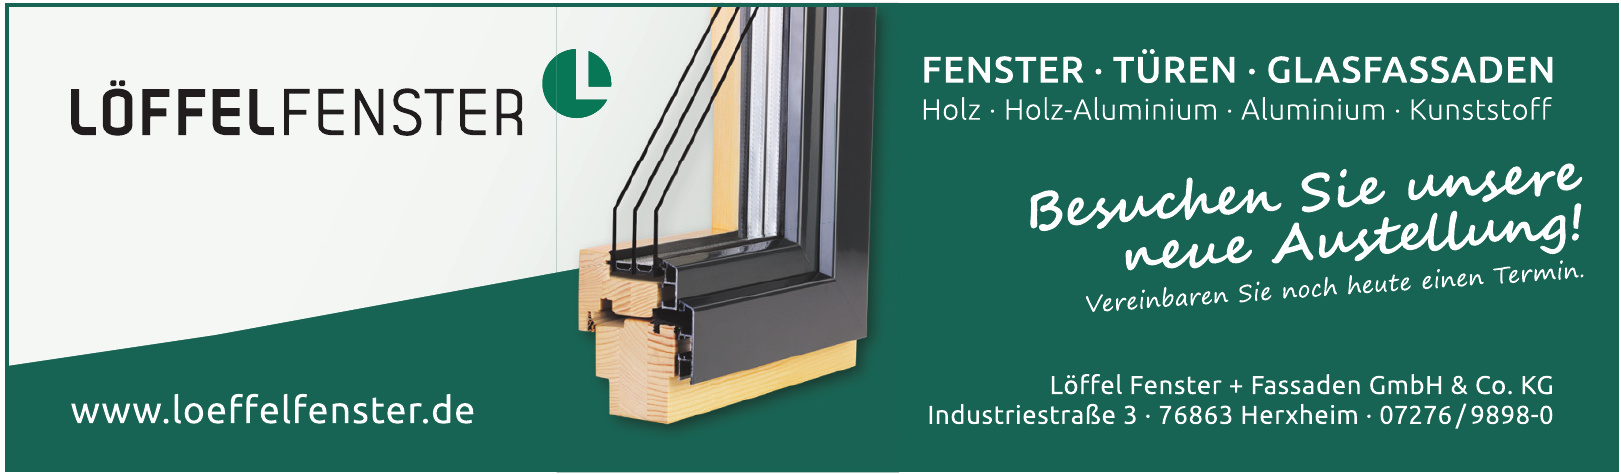 Löffel Fenster + Fassaden GmbH & Co. KG